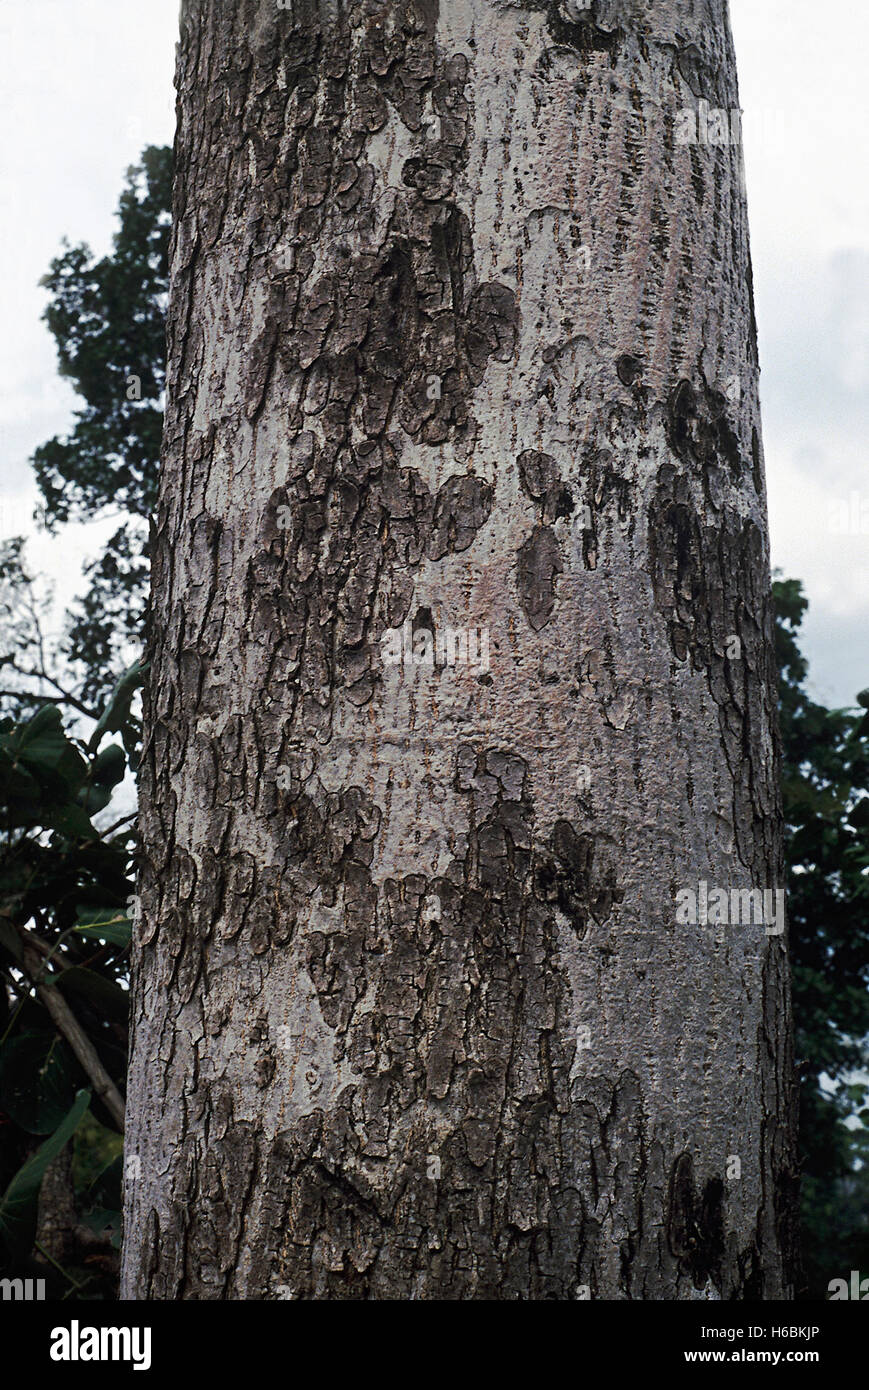 Corteza. odina wodier. Familia: Anacardiaceae. Un árbol caducifolio común desde los bosques de la península de la India. La goma se utiliza para siz Foto de stock